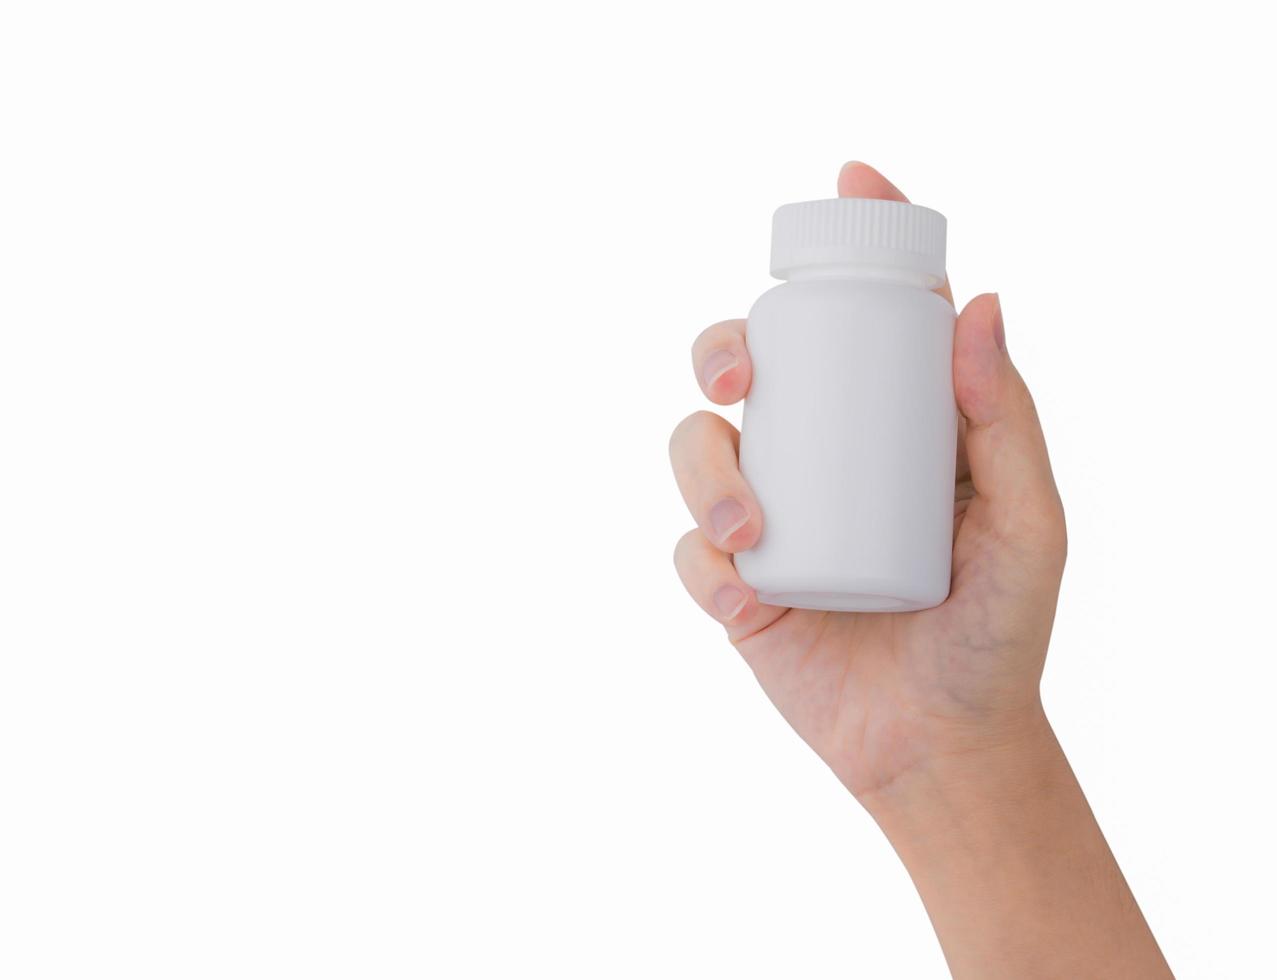 mano de mujer sosteniendo una botella de píldoras recetadas con una etiqueta en blanco aislada en fondo blanco con espacio para copiar texto. foto